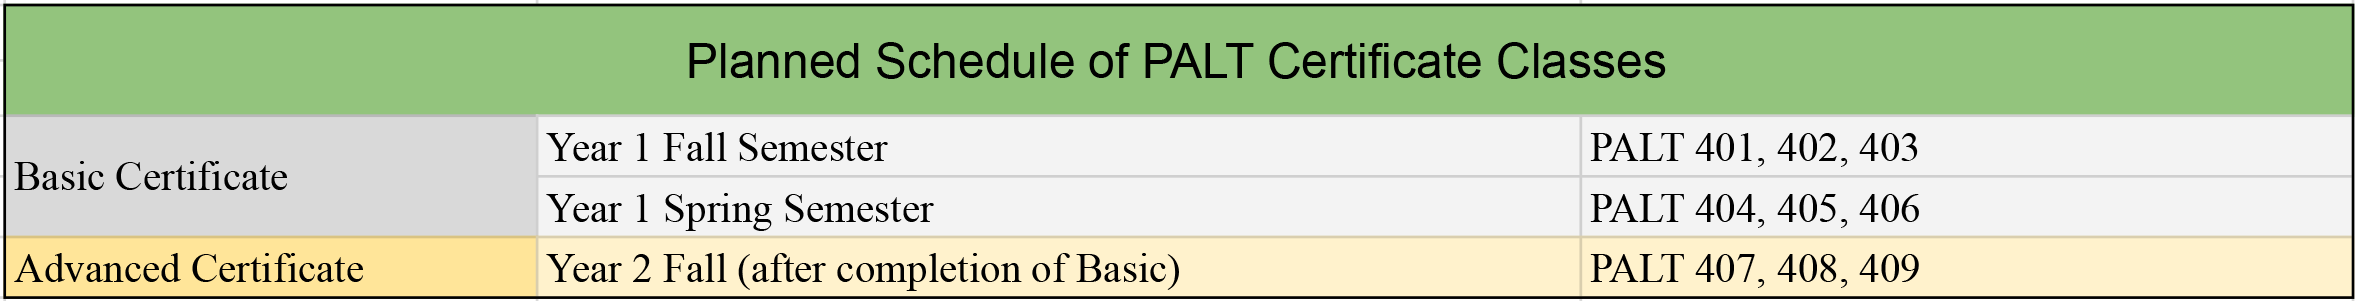 palt planned classes